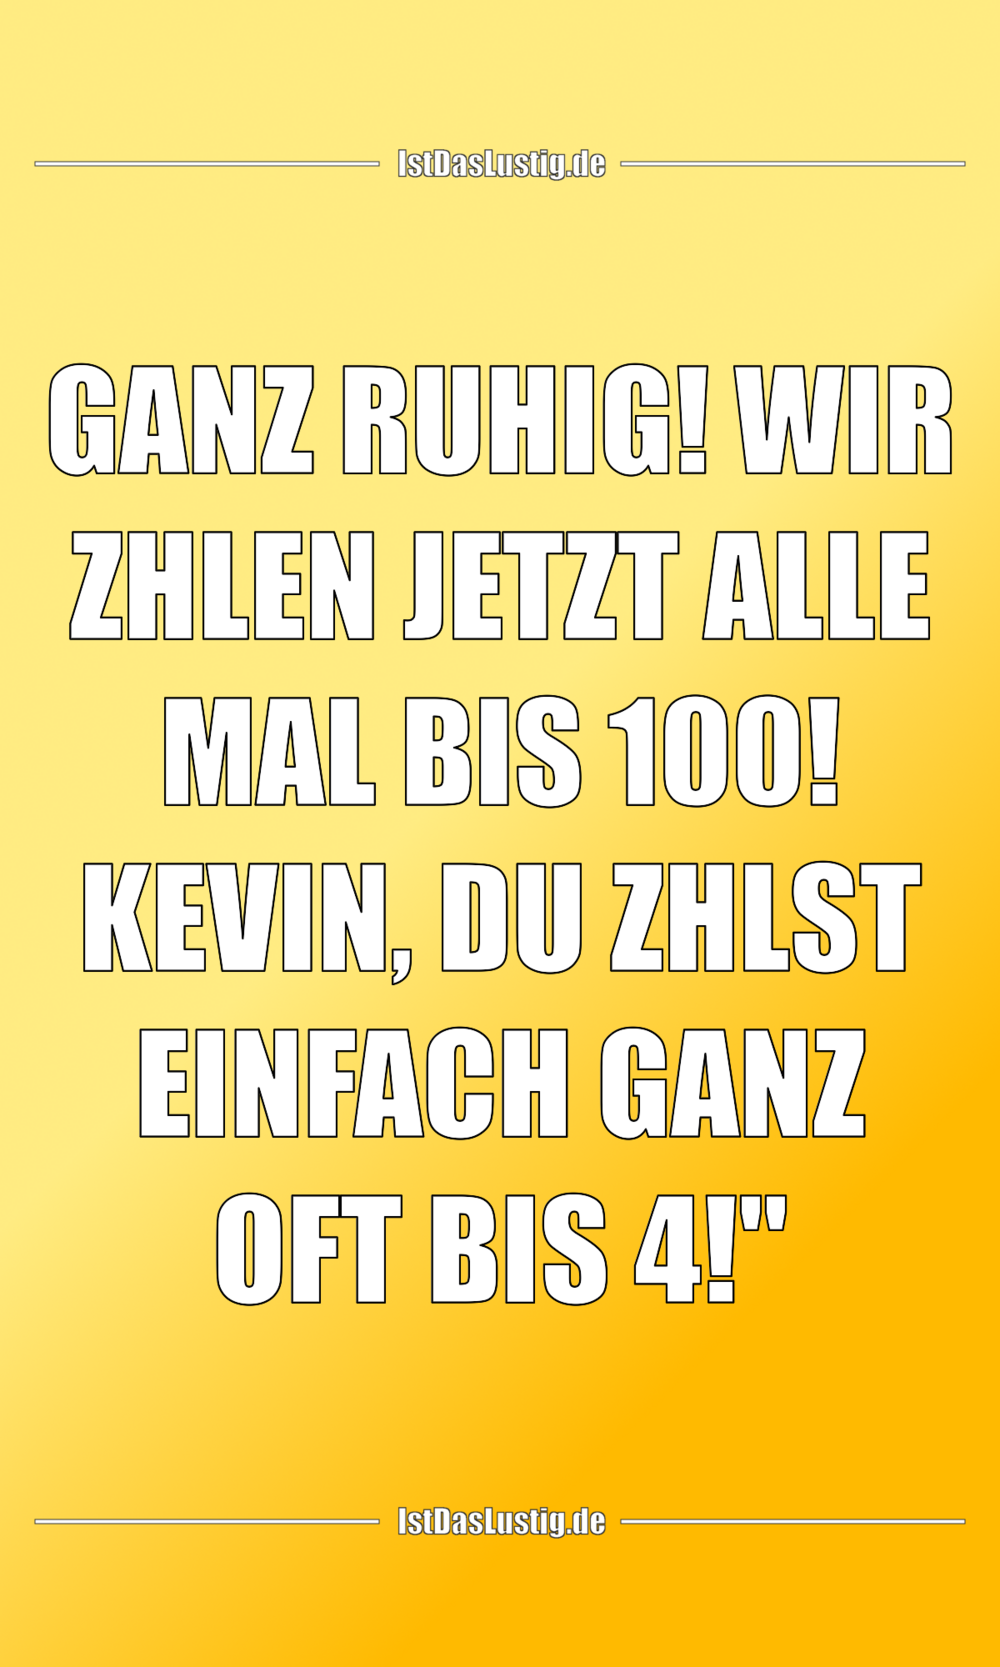 Lustiger BilderSpruch - „GANZ RUHIG! WIR ZÄHLEN JETZT ALLE MAL BIS 100!...